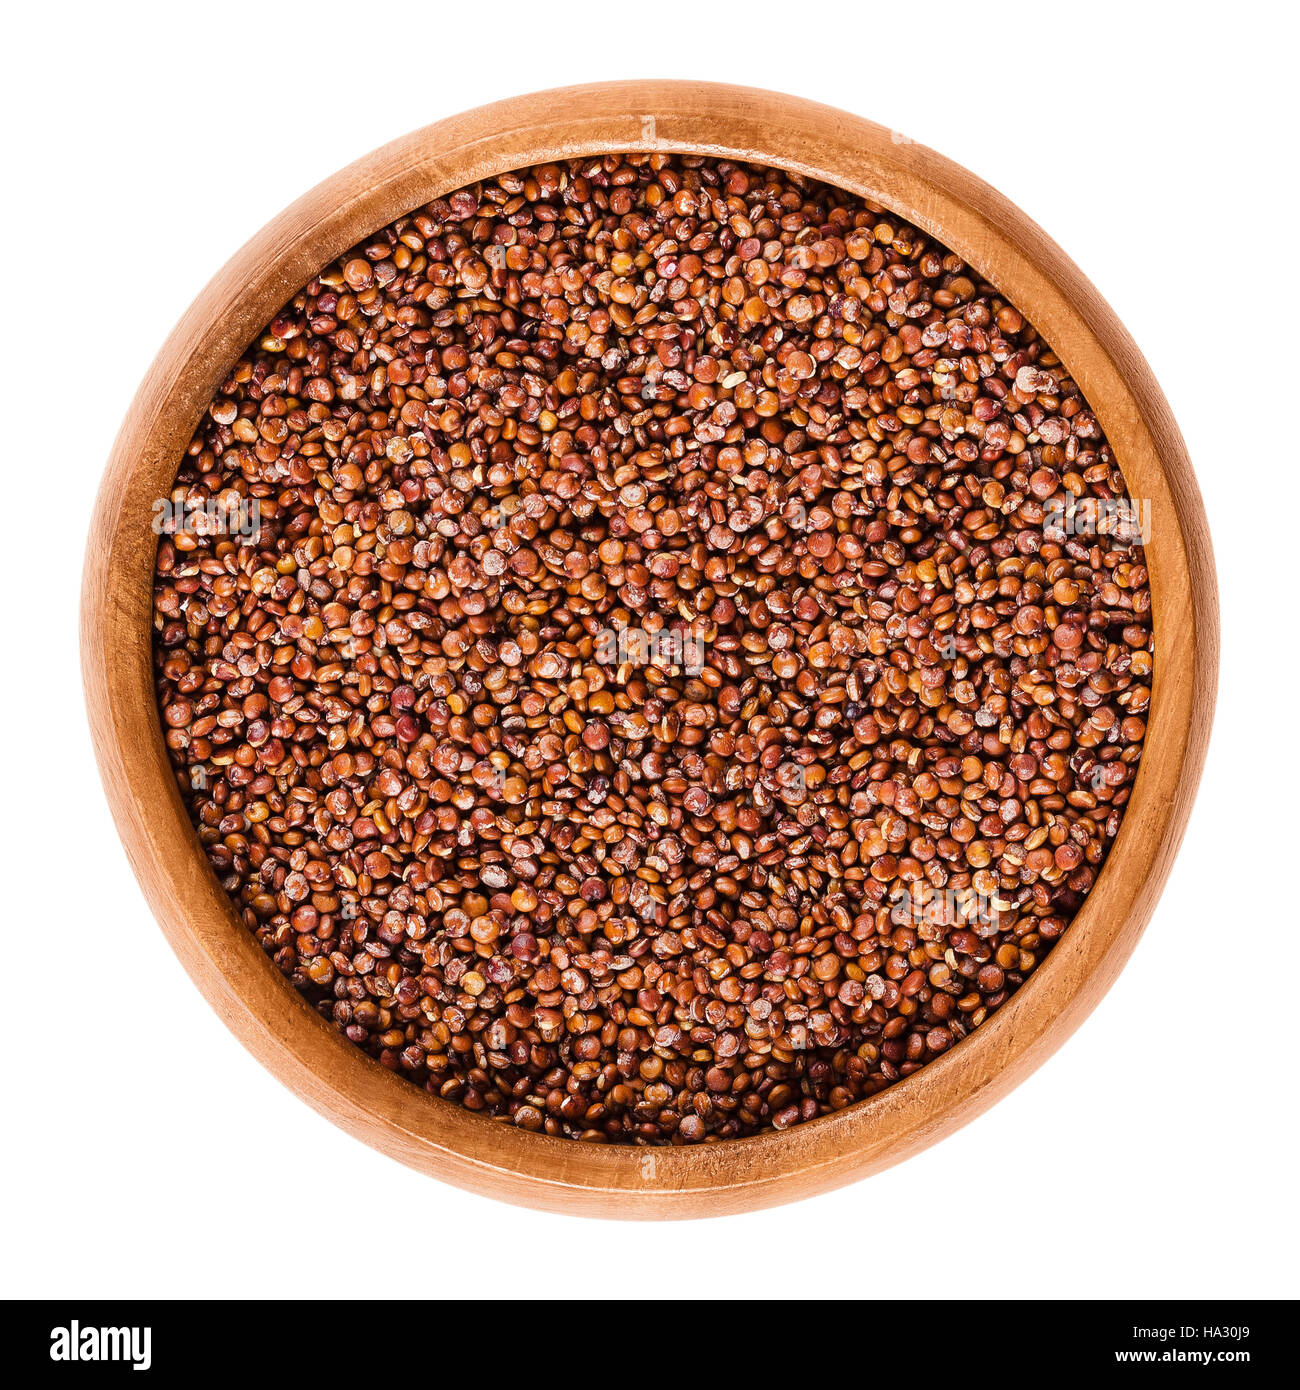 Quinoa roja semillas en tazón de madera. Los frutos comestibles de la cosecha de grano de Chenopodium quinoa en el amaranto es un pseudocereal de la familia. Foto de stock